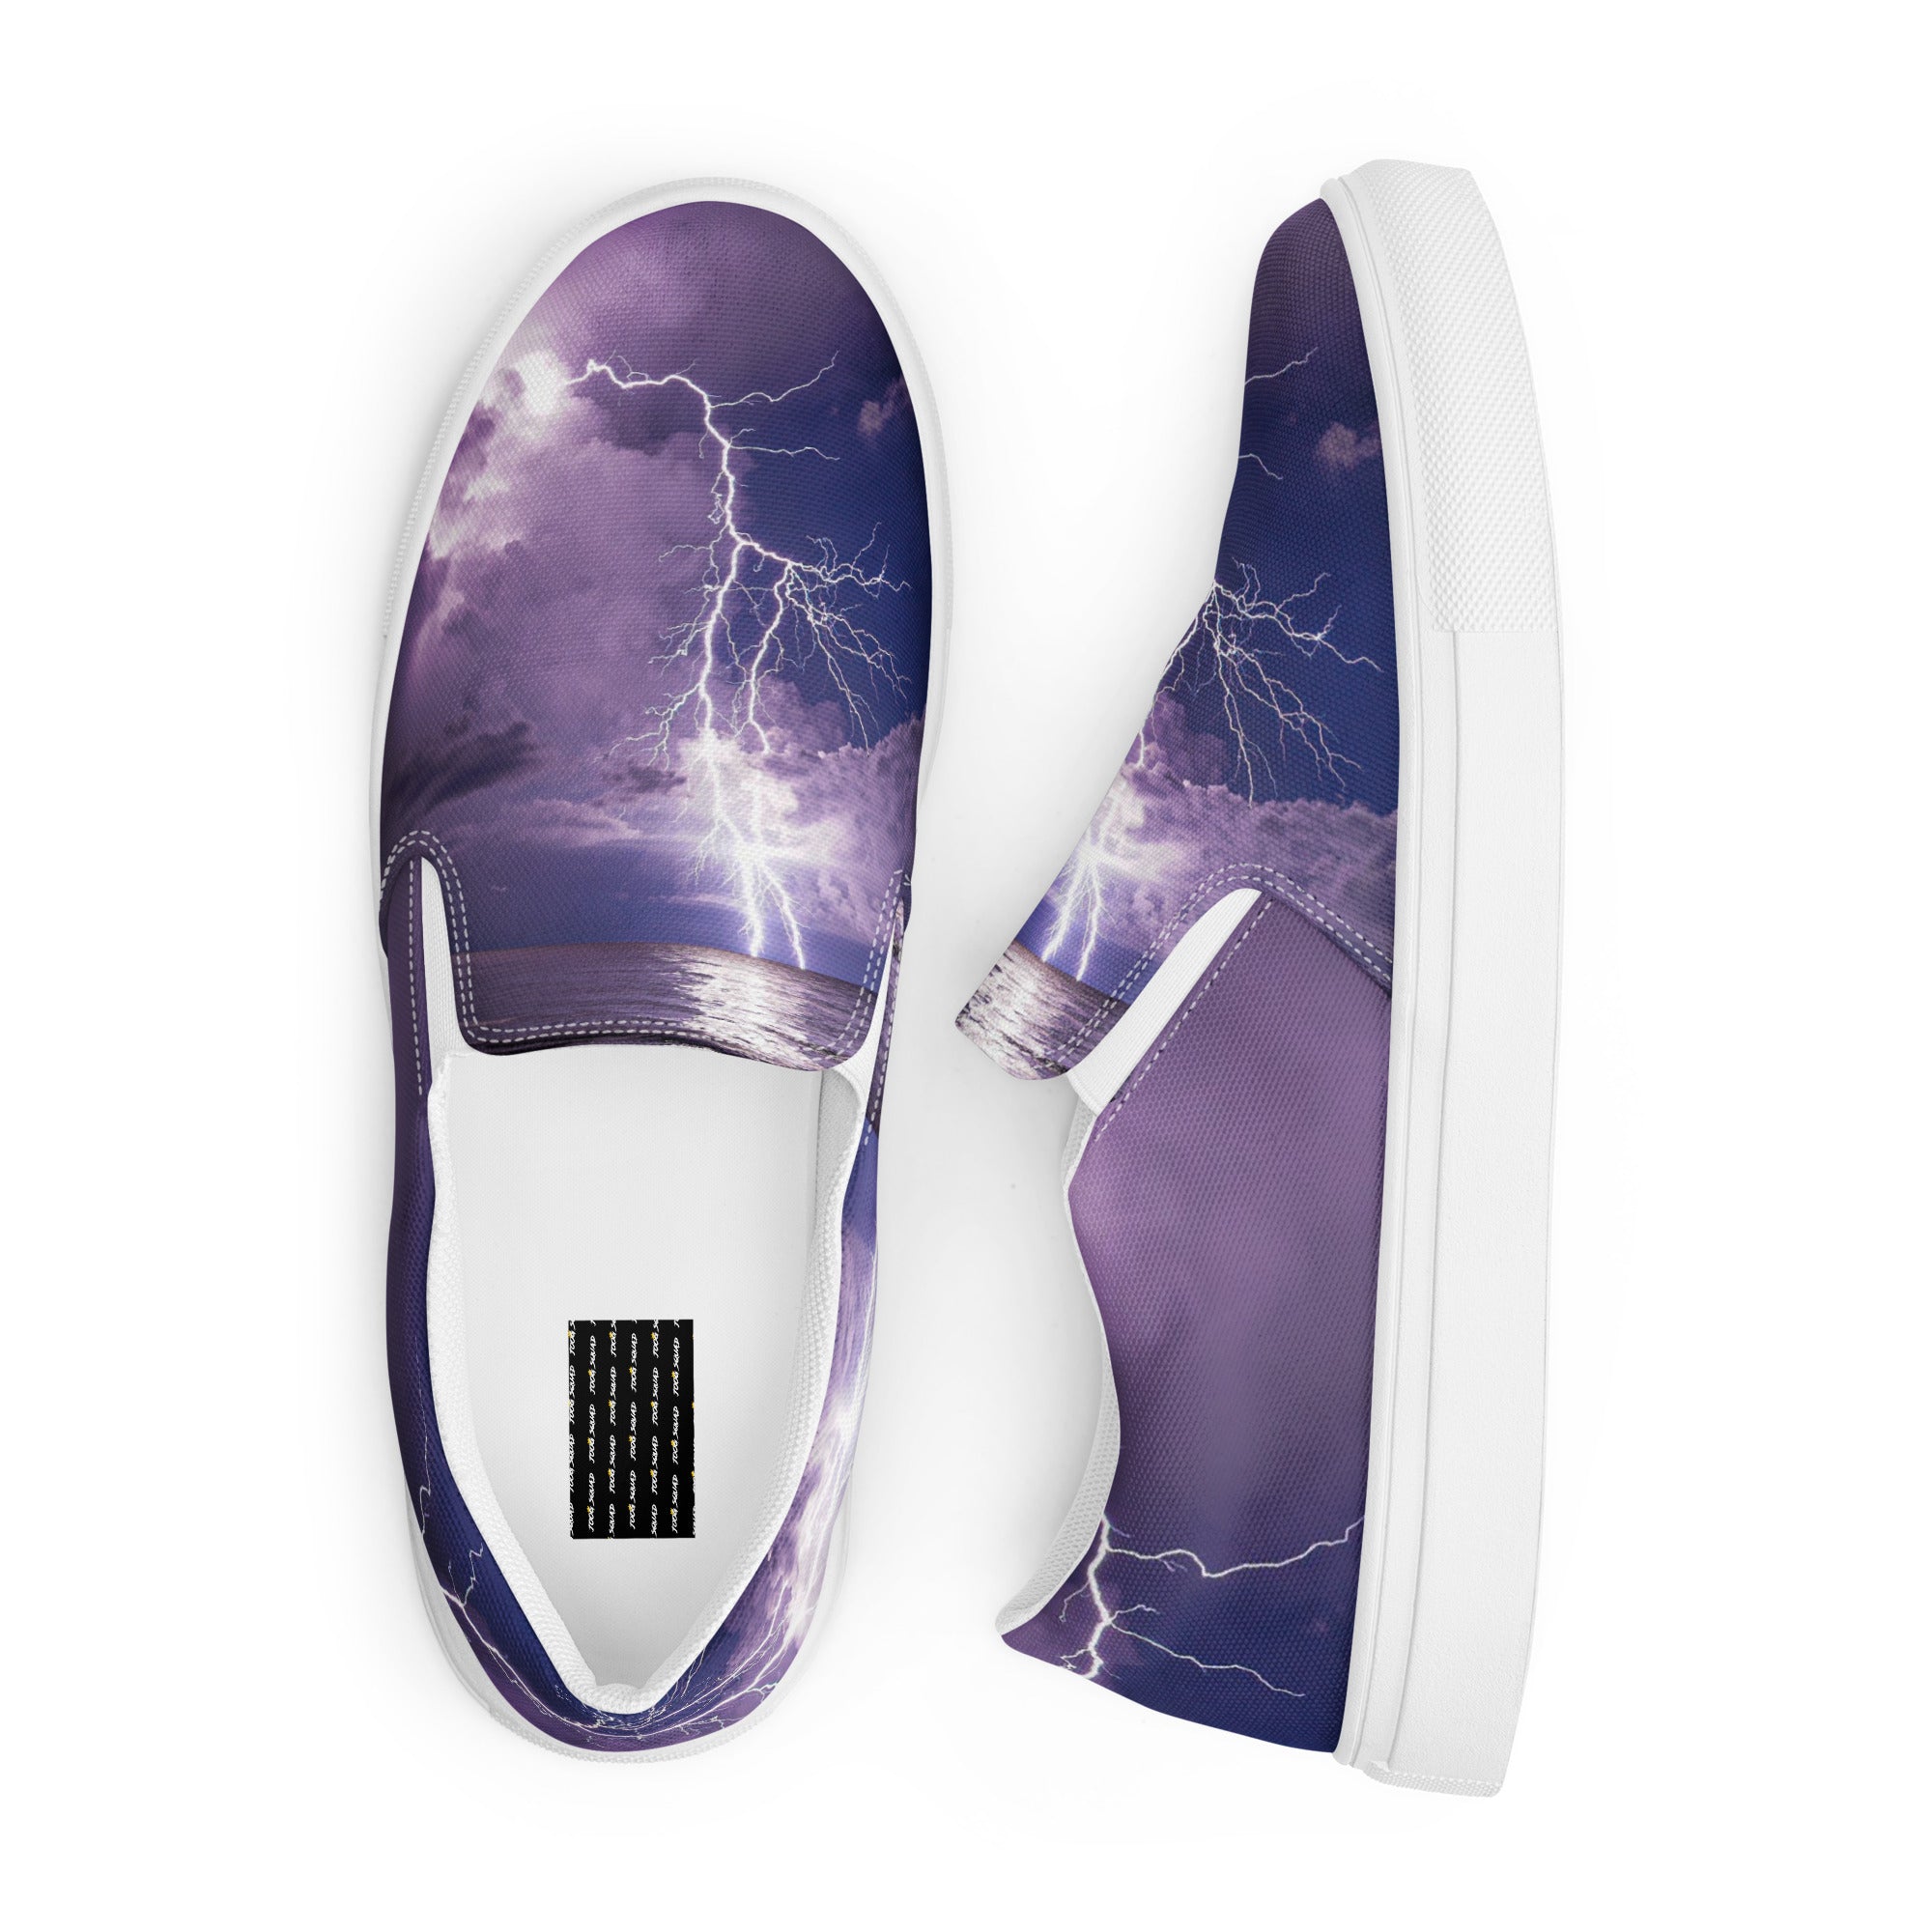 Lightning Strike Men’s slip-on canvas shoes